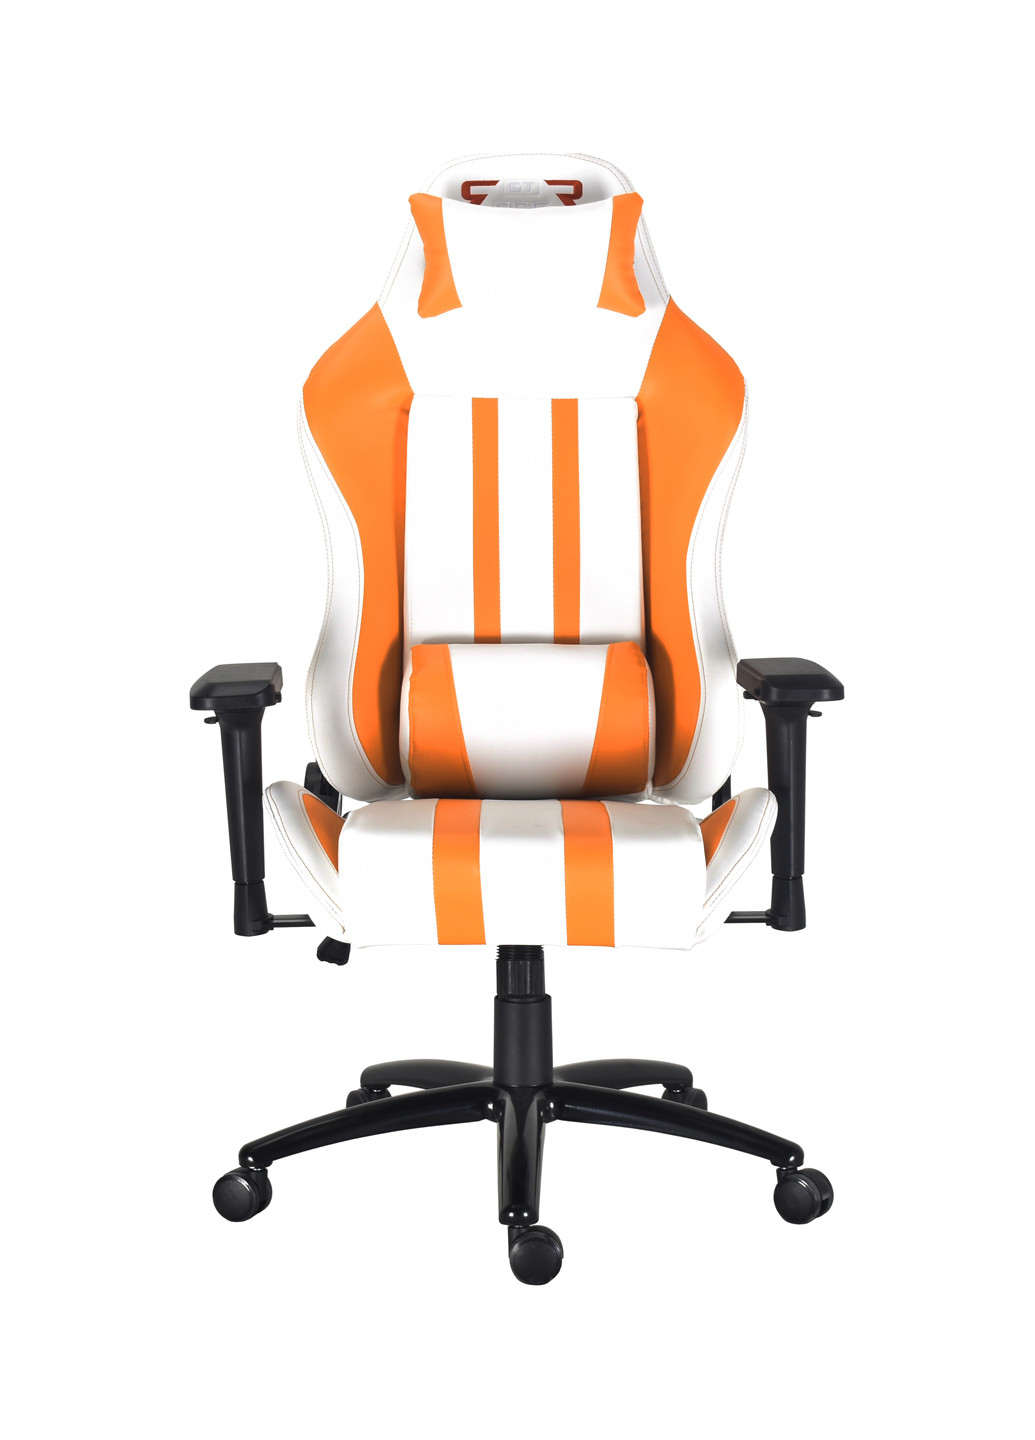 Кресло X-2608 White/Orange GT Racer кресло gt racer x-2608 white/orange (143068481)